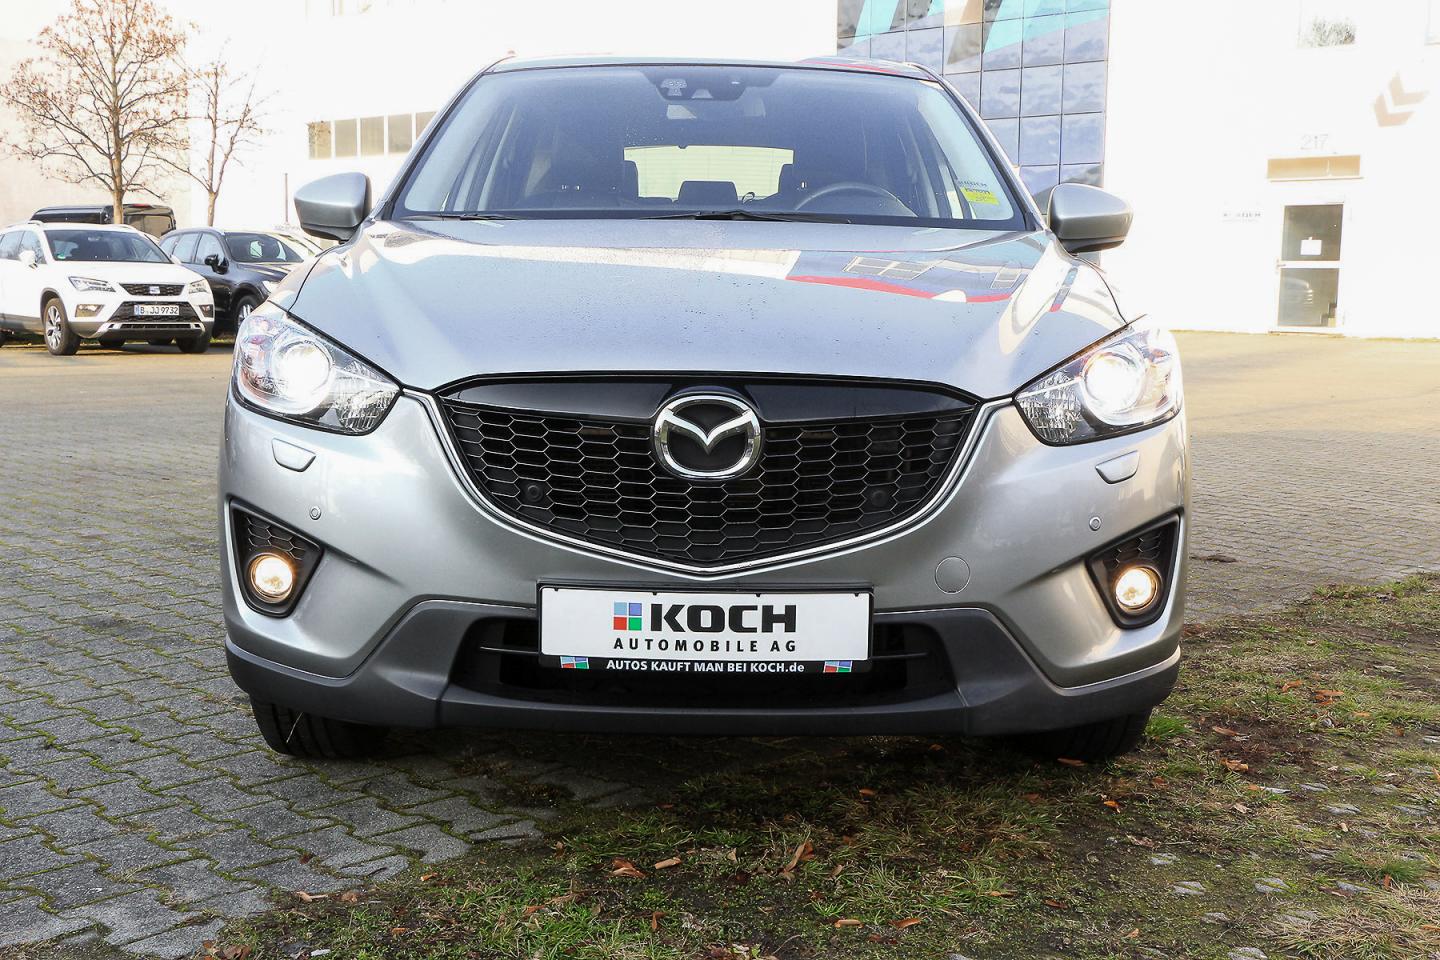 Mazda Cx 5 2 0l Sky G Awd 160 Ps 6gs Sports Tec P Navi Gimm Autos Kauft Man Bei Koch Gute Preise Guter Service